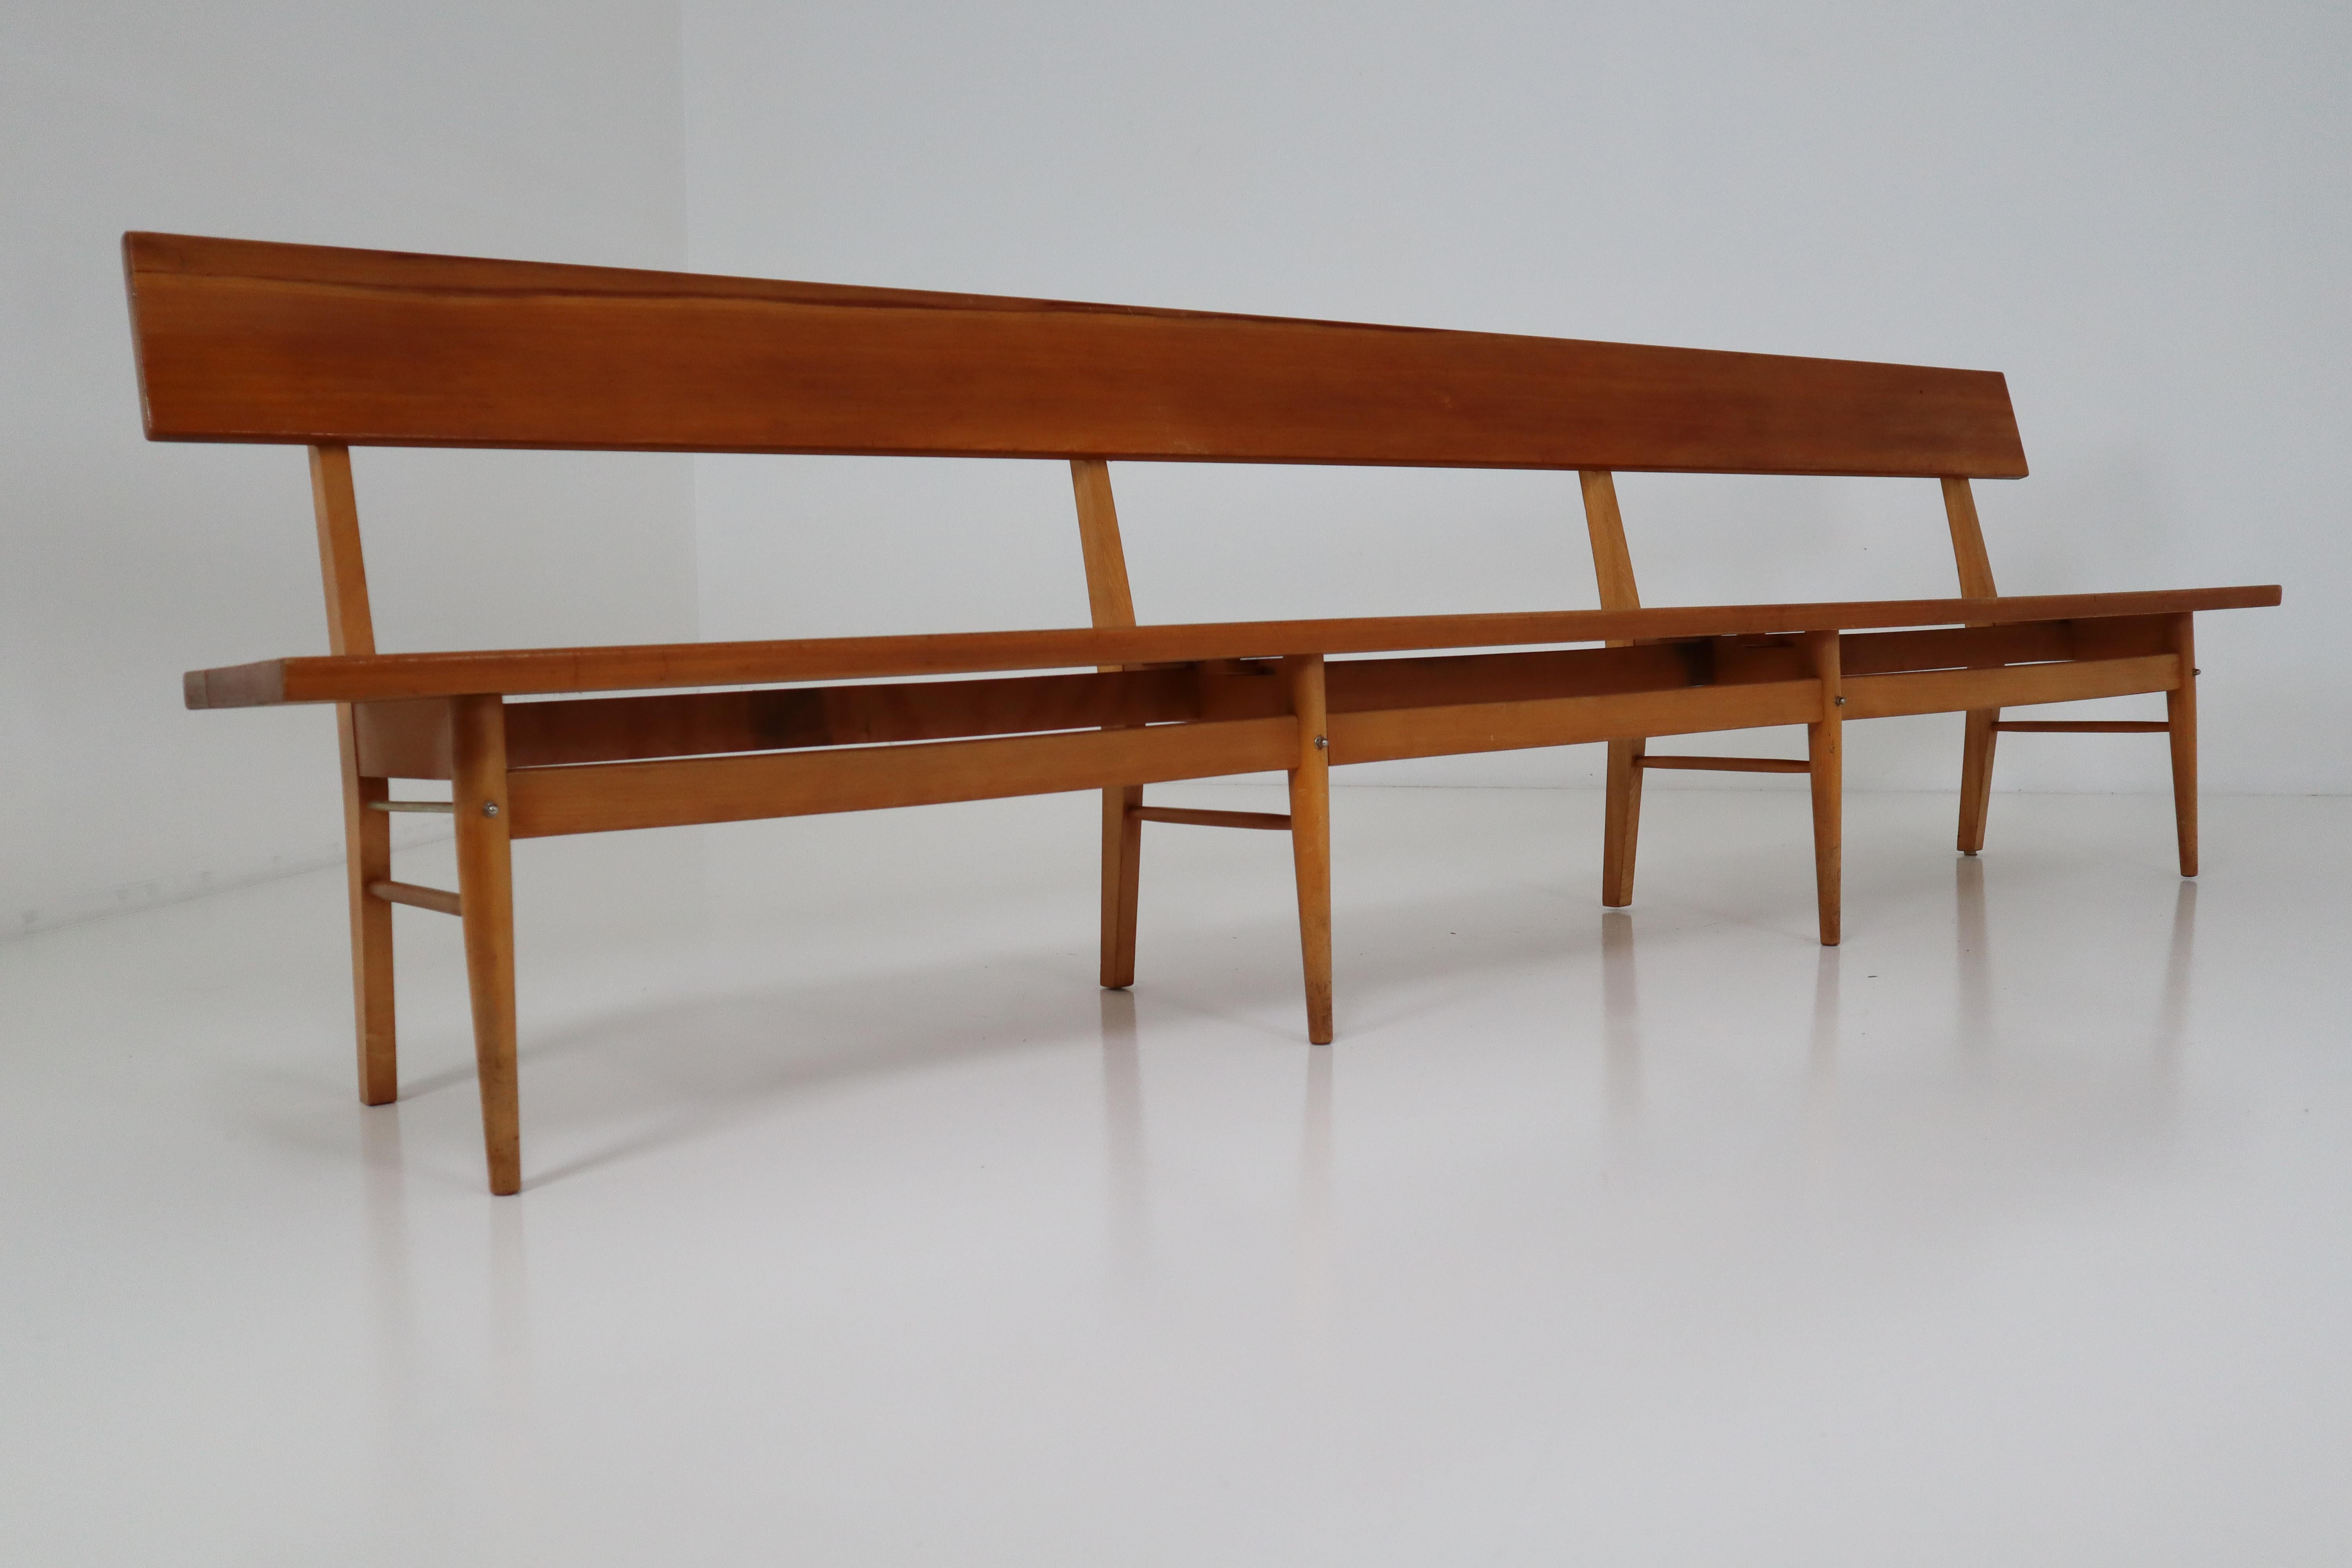 Four Large Mid-20 Century Scandinavian Wooden Benches (Europäisch)